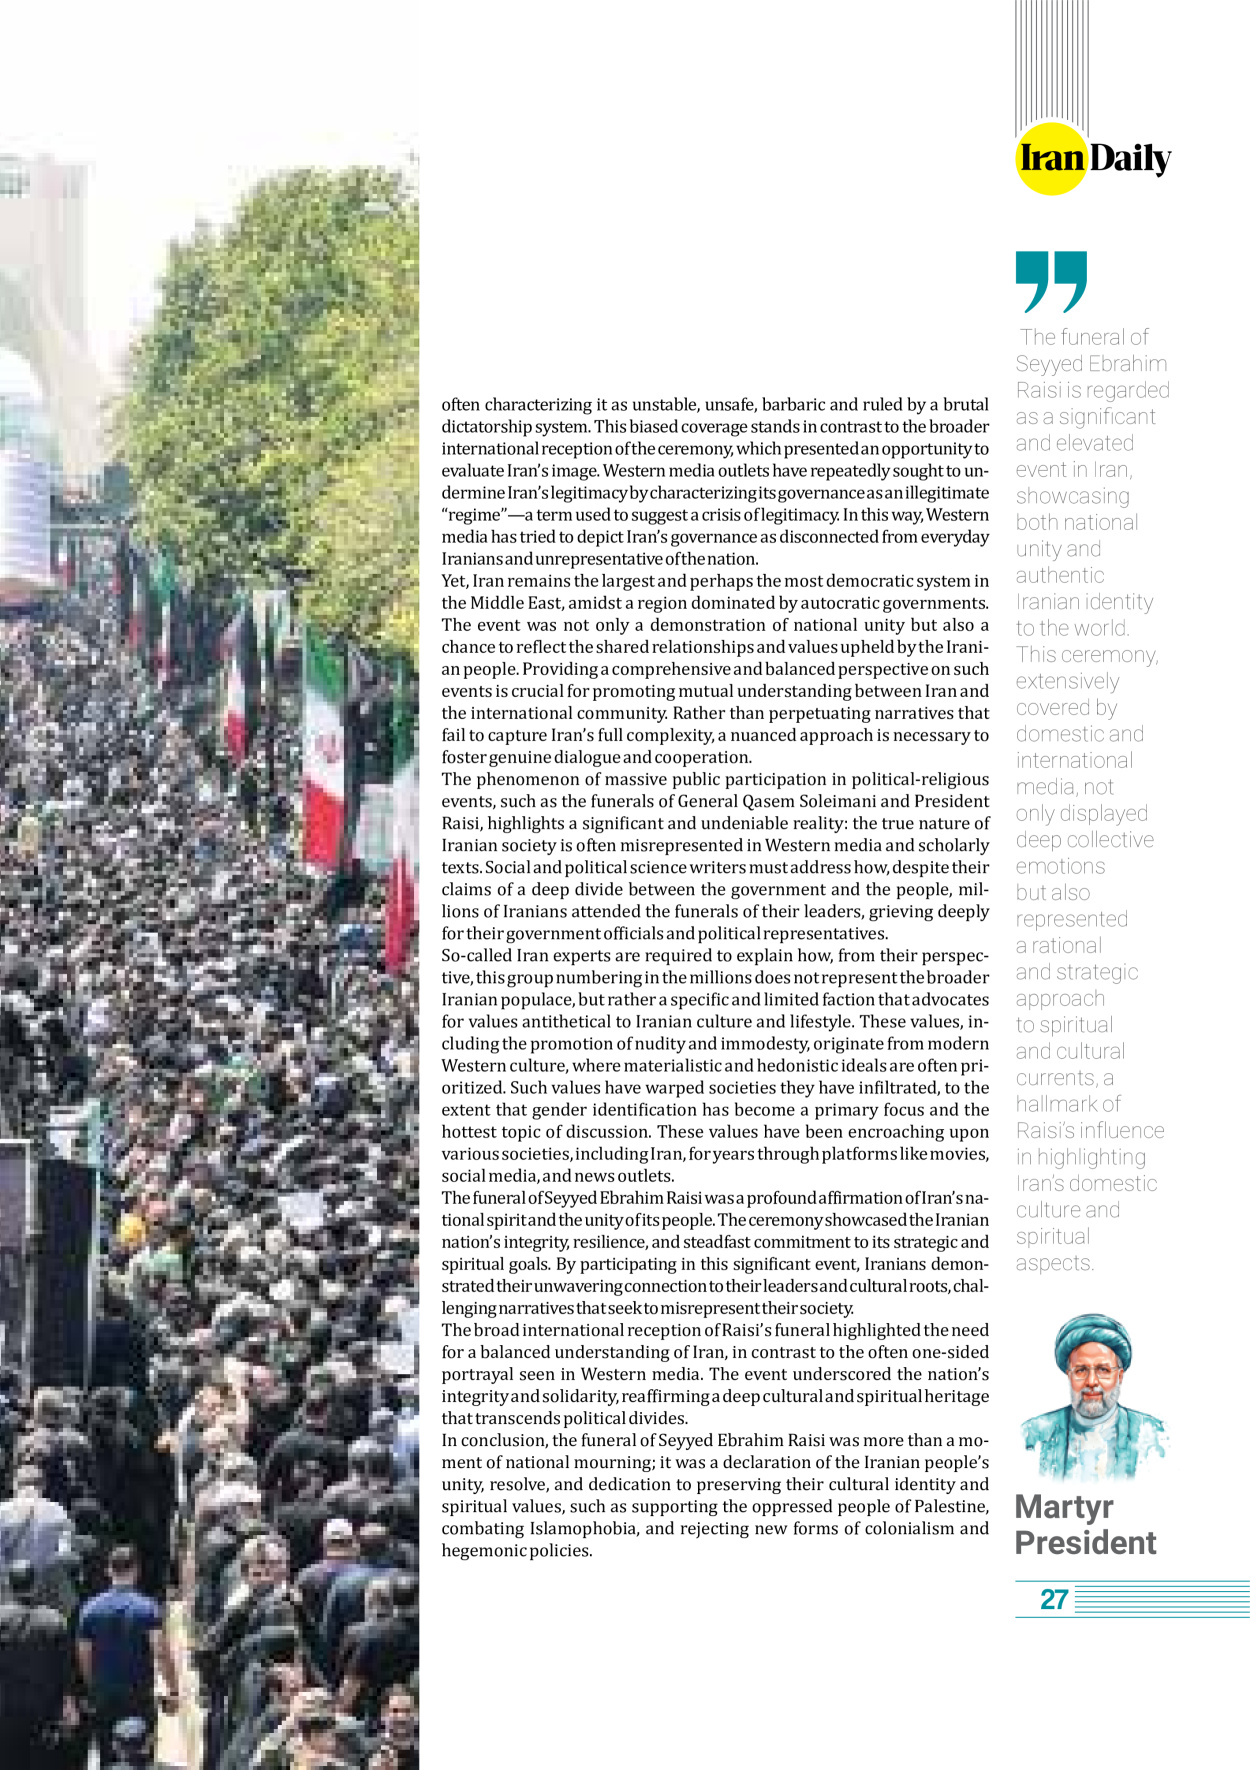 روزنامه ایران - ویژه نامه وِزه نامه چهلم شهید رییسی( انگلیسی) - ۱۷ تیر ۱۴۰۳ - صفحه ۲۷